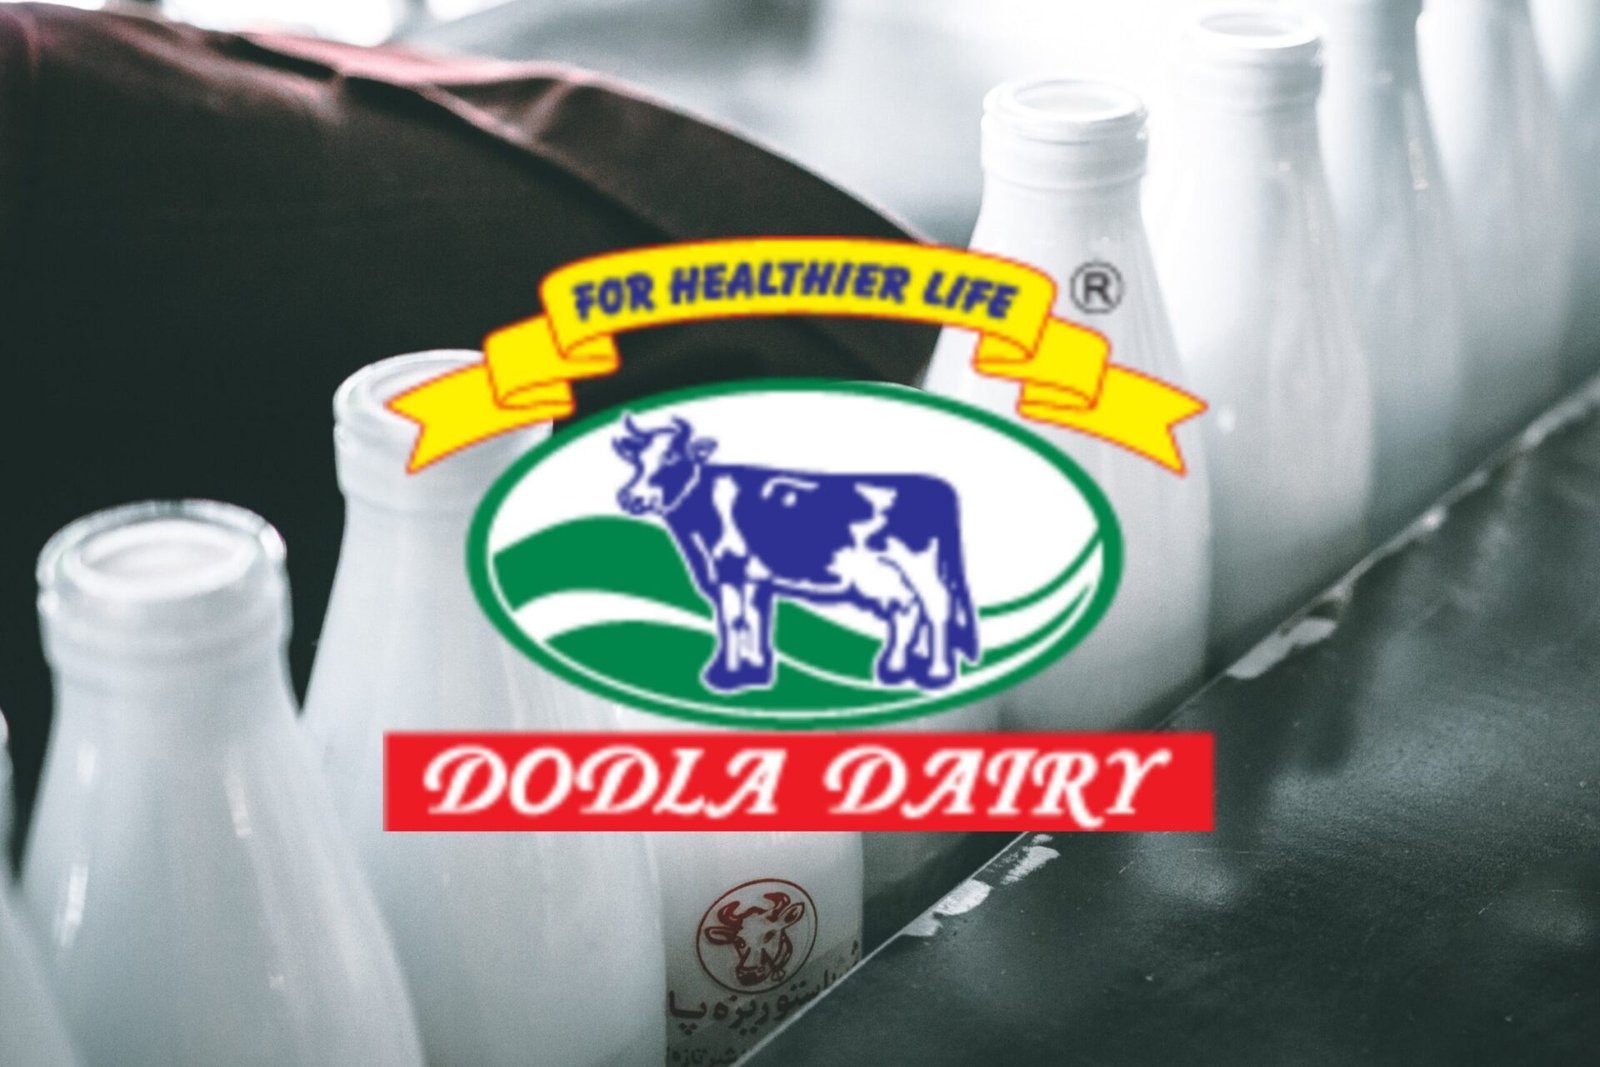 Dodla Dairy Limited | Dodla Dairy Wiki. - SwadeshiEra